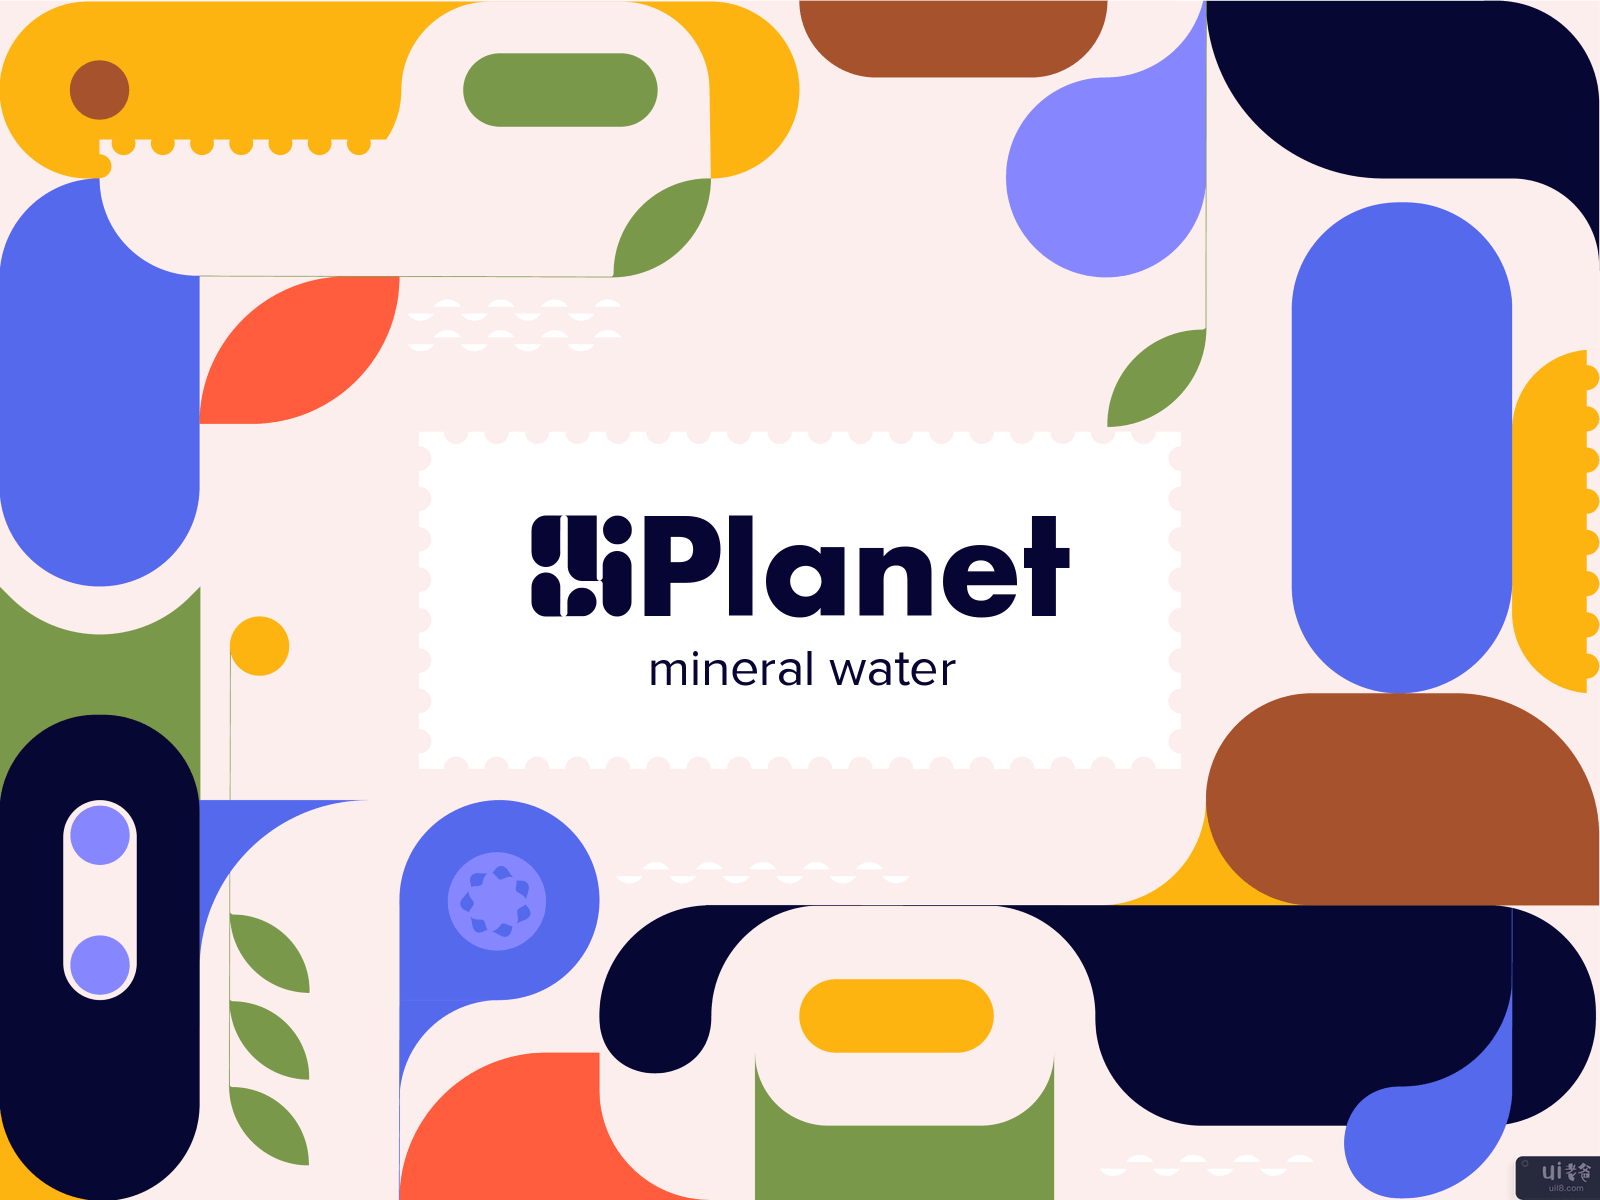 星球 - 矿泉水的品牌建设(Planet - Branding for Mineral Water)插图